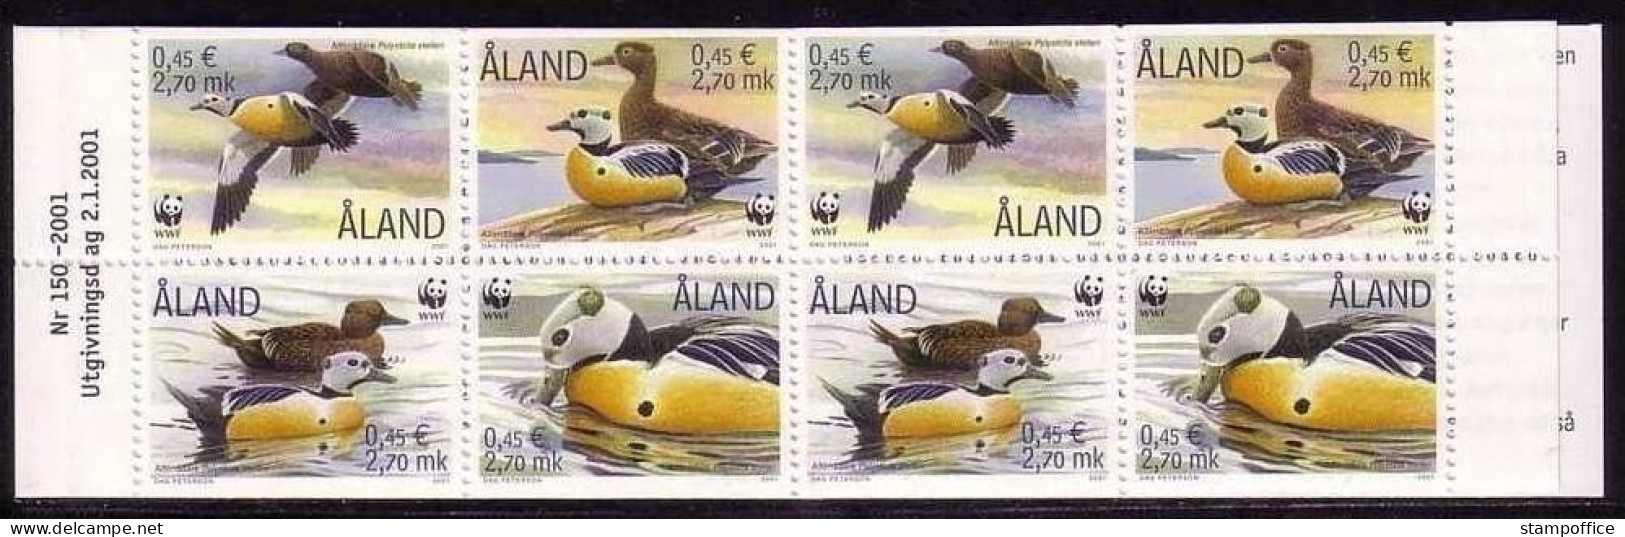 ALAND MH 9 POSTFRISCH(MINT) WWF 2001 SCHECKENTE - Unused Stamps